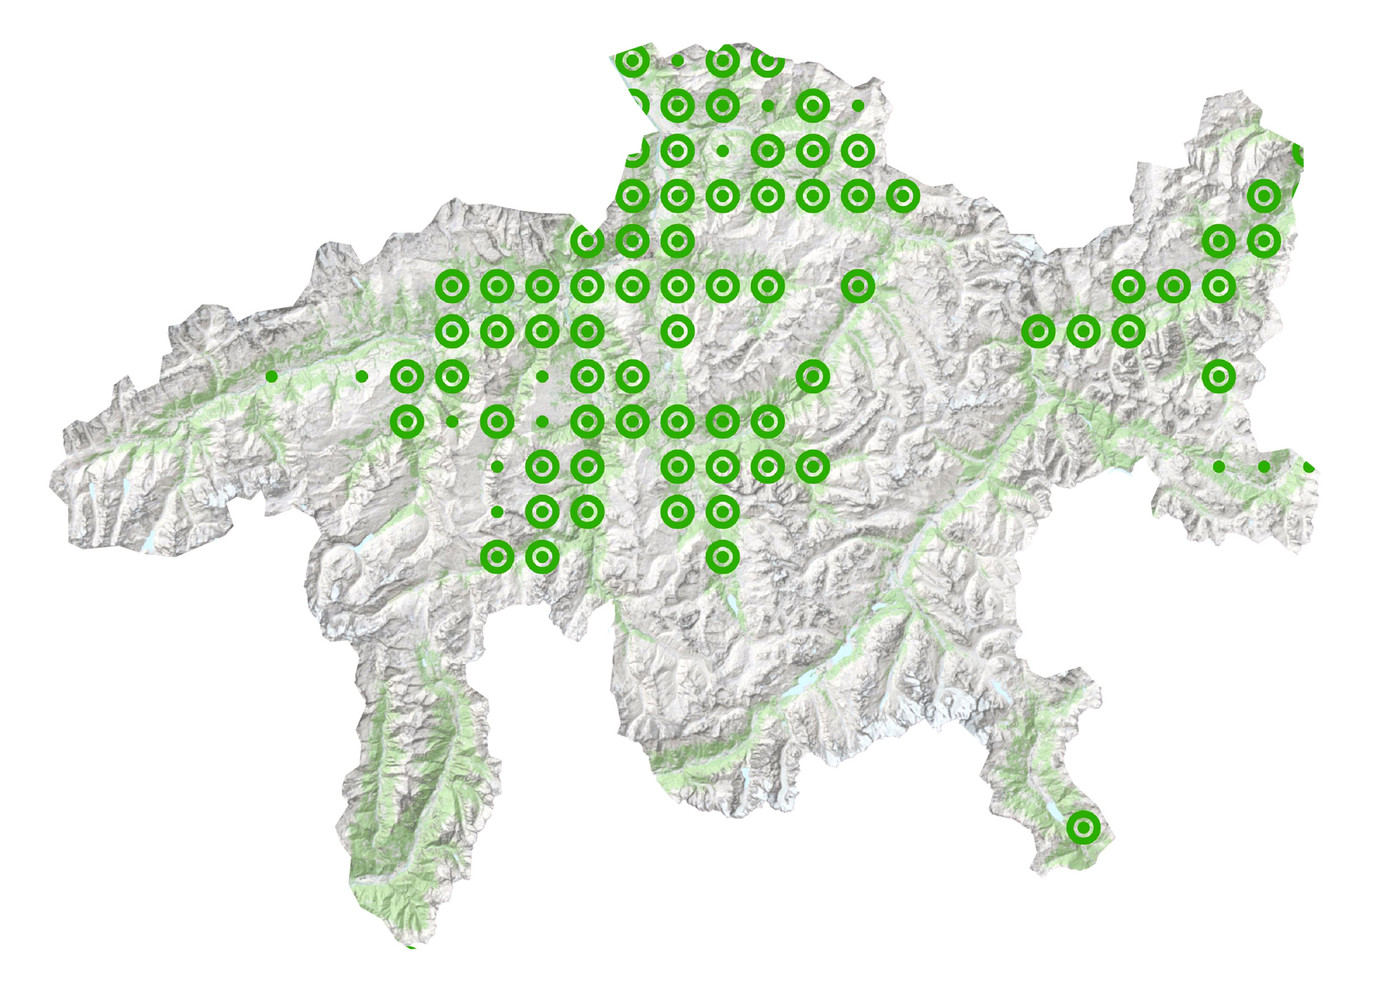 Verbreitung im Kanton: In diesen Regionen Graubündens kommt das Weidenblättrige Rindsauge vor.